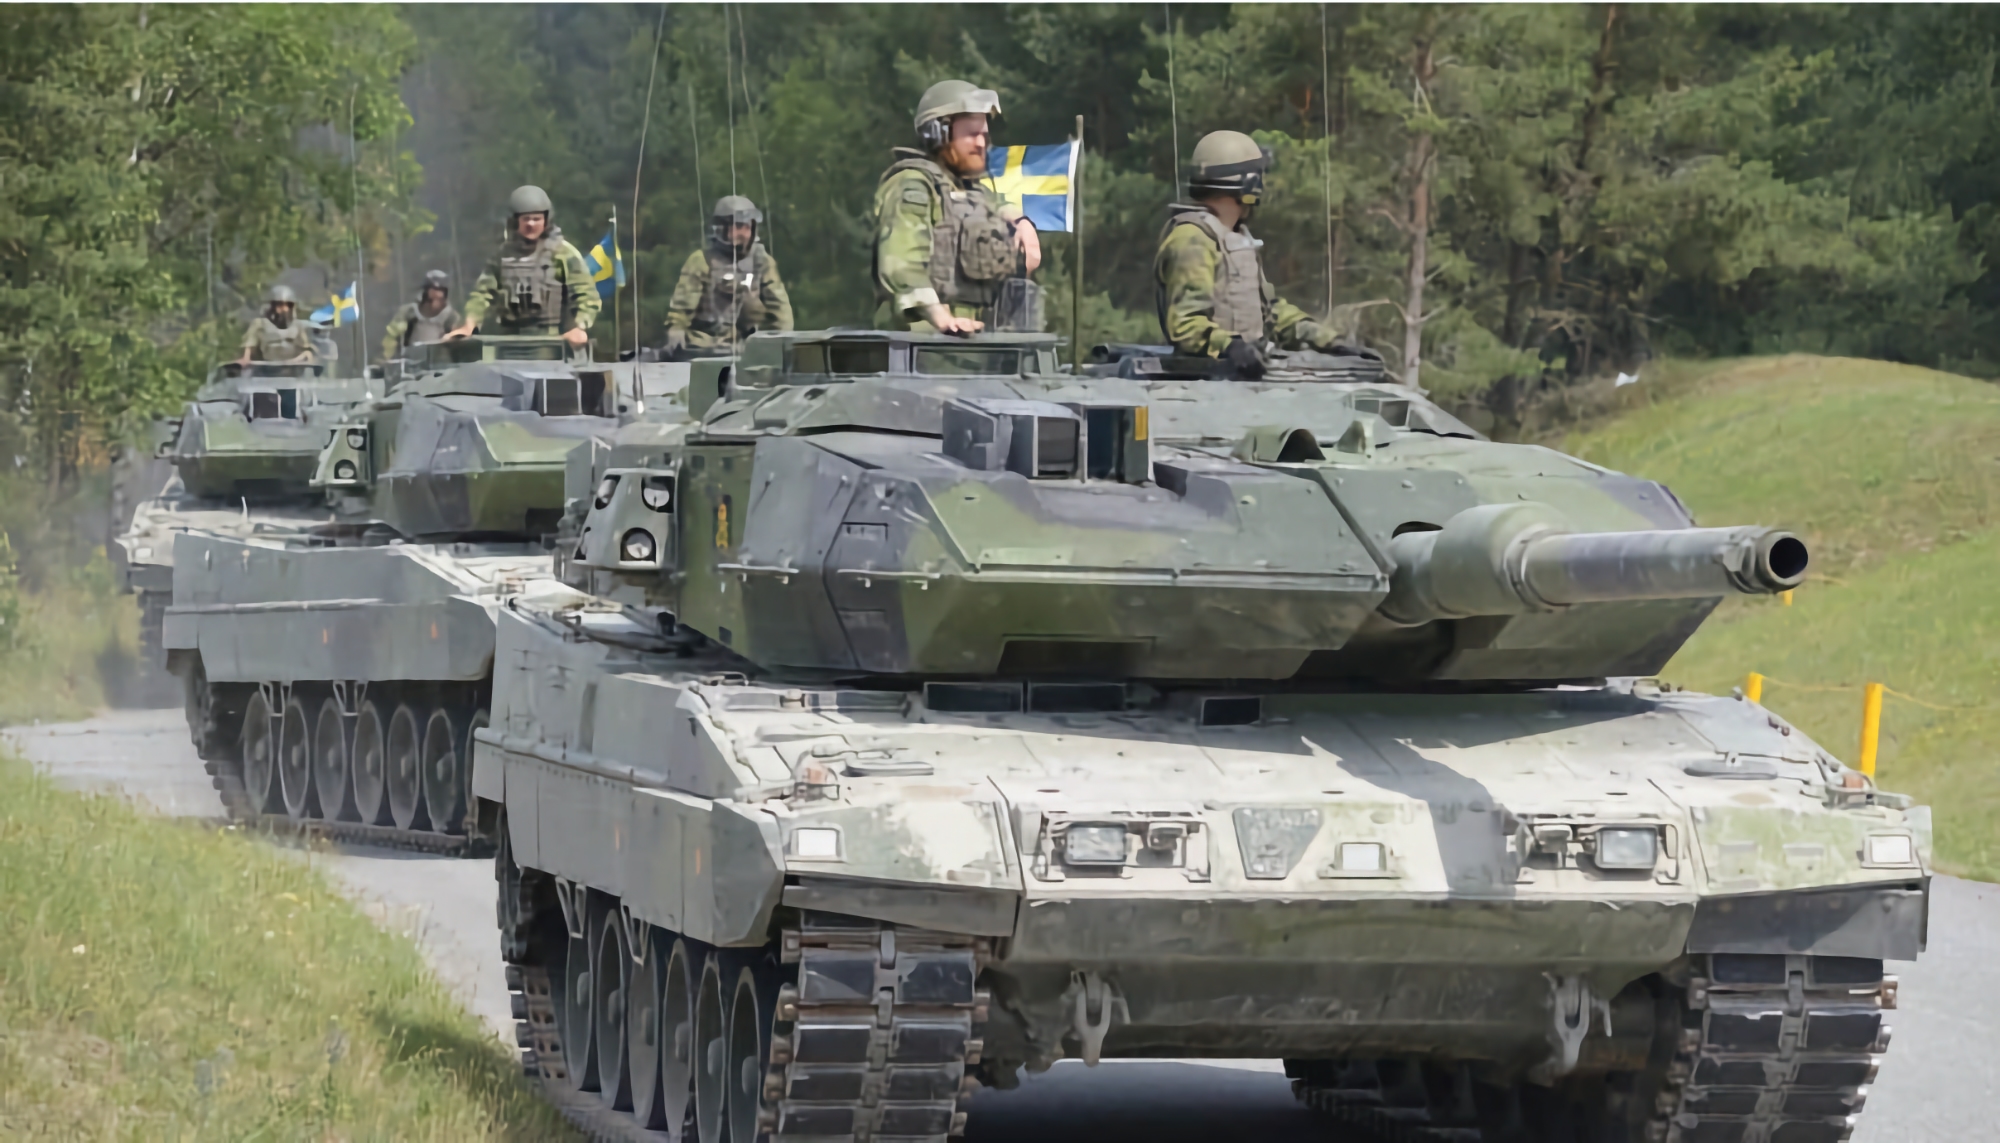 Sverige har overført 10 Stridsvagn 122-kampvogne til Ukraine, en moderniseret version af den tyske Leopard 2A5-kampvogn.